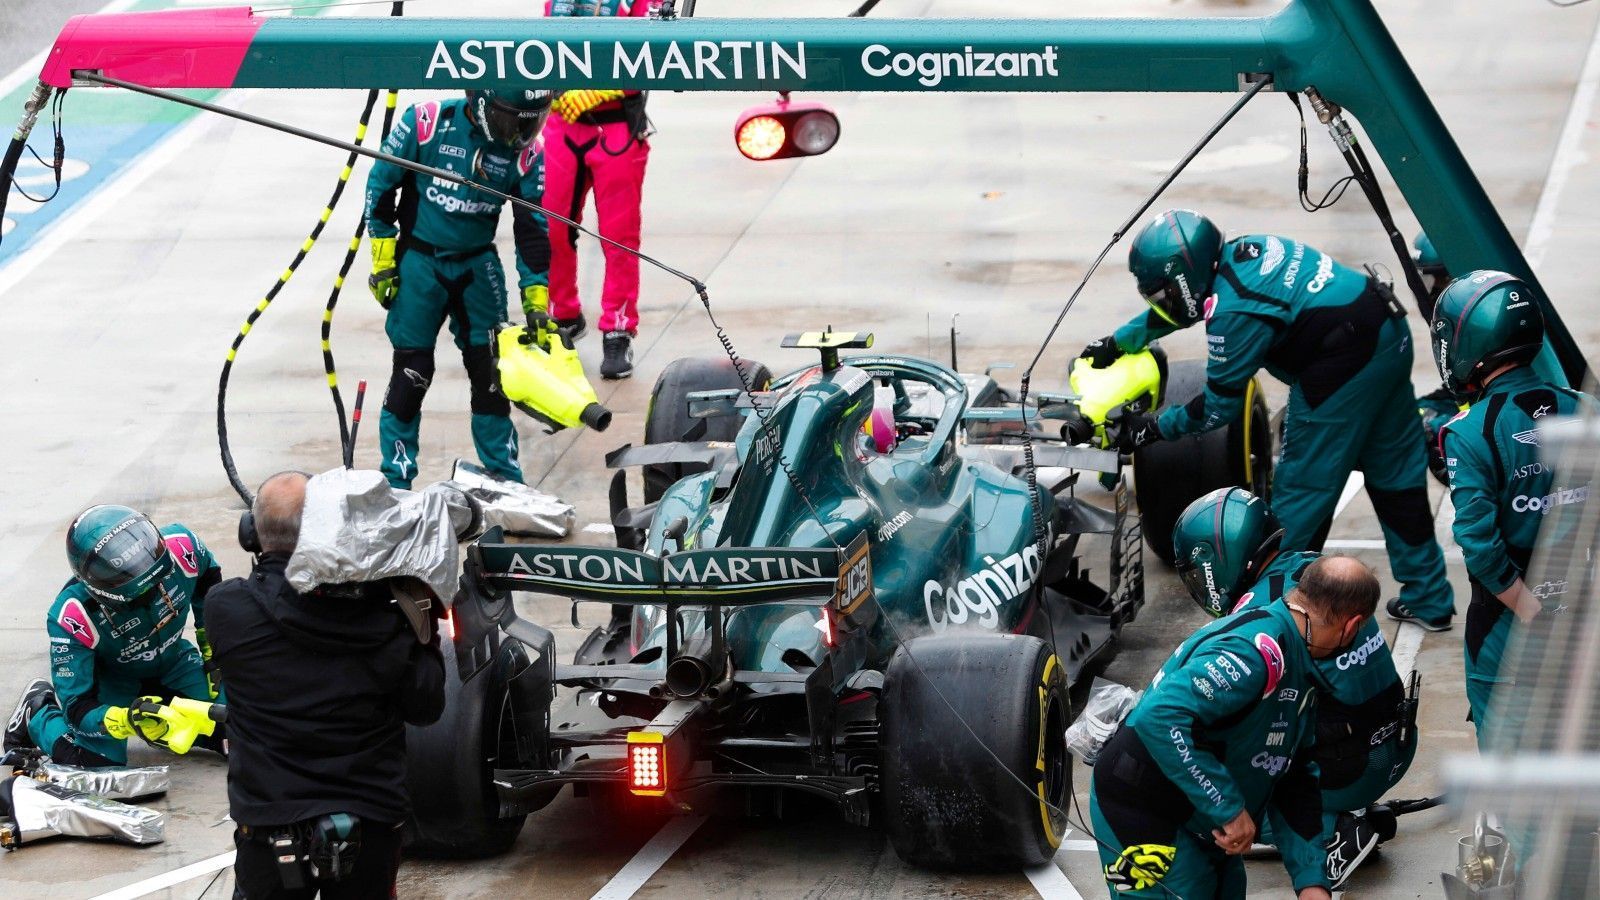 
                <strong>Verlierer: Aston Martin</strong><br>
                Das viele Pech, das Sebastian Vettel ertragen musste, geht zu einem nicht unerheblichen Teil auf den Rennstall zurück. Die überhitzen Bremsen seien "ein grober Fehler" des gesamten Teams gewesen, erklärte Vettel bei "Sky". Bei den Reparaturarbeiten waren die Mechaniker zu langsam, was Vettel den Start aus der Box und die Strafe bescherte. Beim Re-Start entschied sich das Team für die falschen Reifen, weil es einen stehenden Start vermutete, was bei einer nassen Strecke aber eher unwahrscheinlich war. Vettel fiel weiter zurück. "Zu viele kleine Fehler", wie der Deutsche sagte, werfen kein gutes Licht auf seinen neuen Arbeitgeber.
              